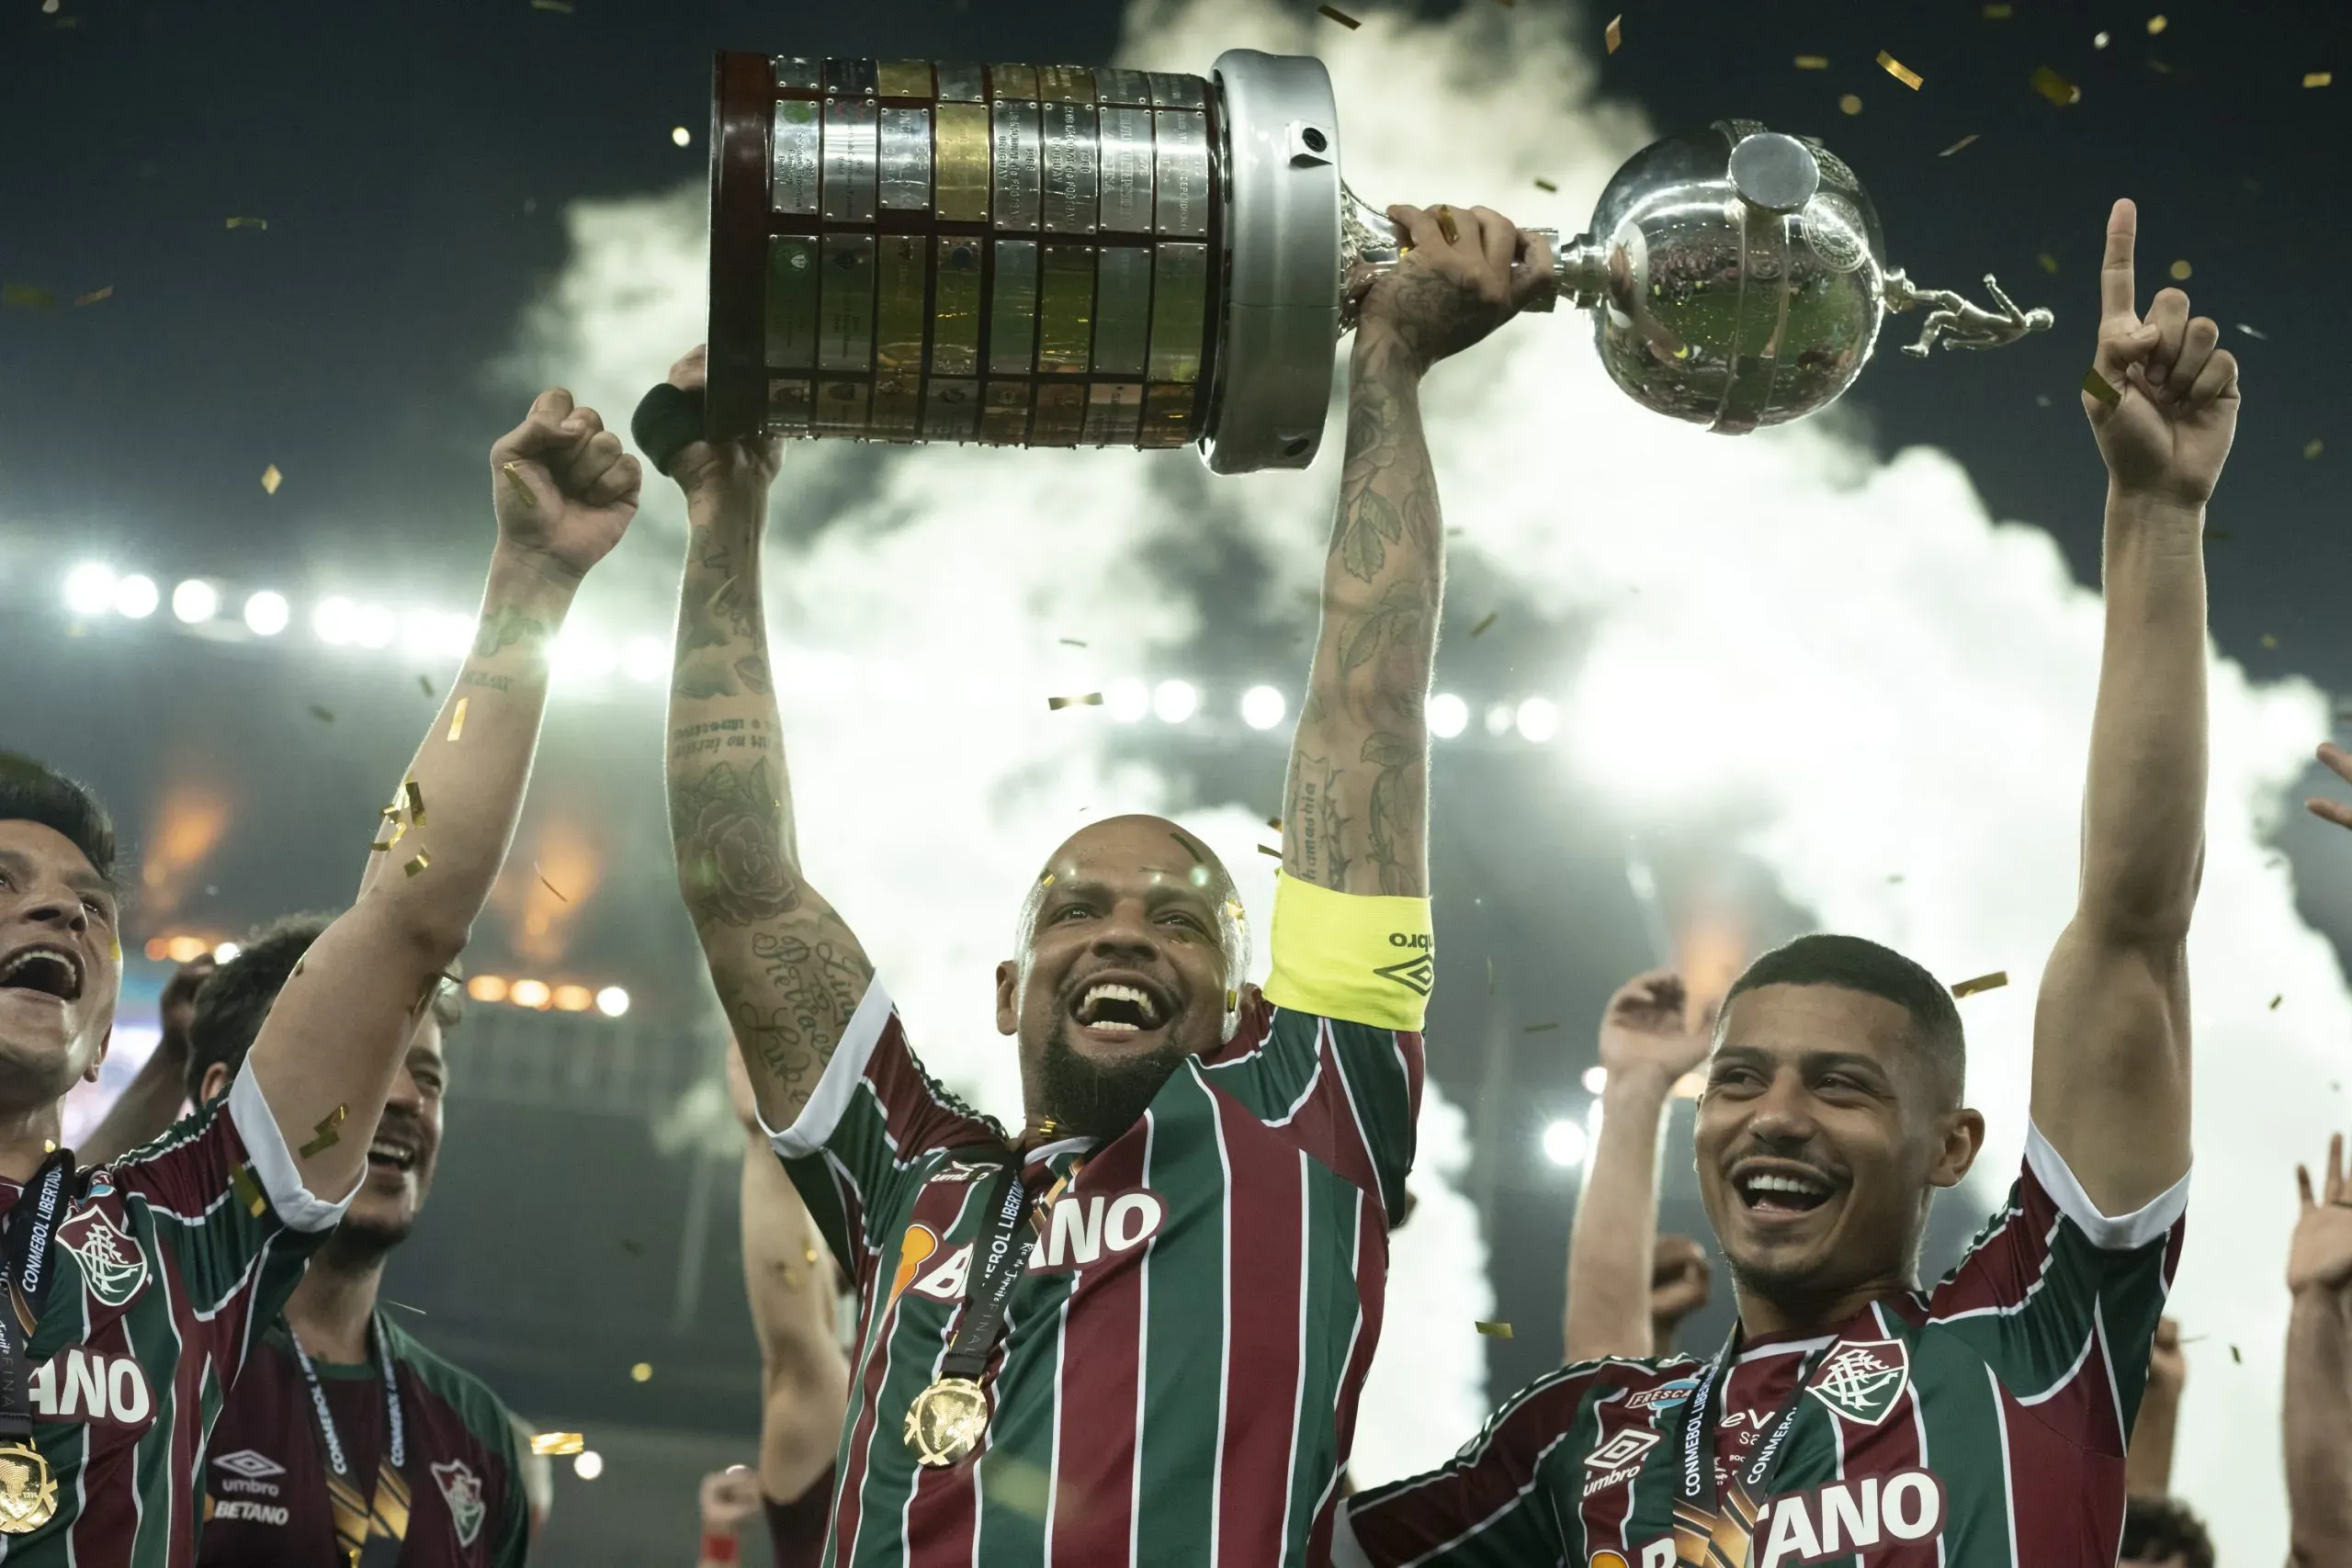 Felipe Melo levantando a taça de campeão da Libertadores pelo Fluminense. Foto: Jorge Rodrigues/AGIF